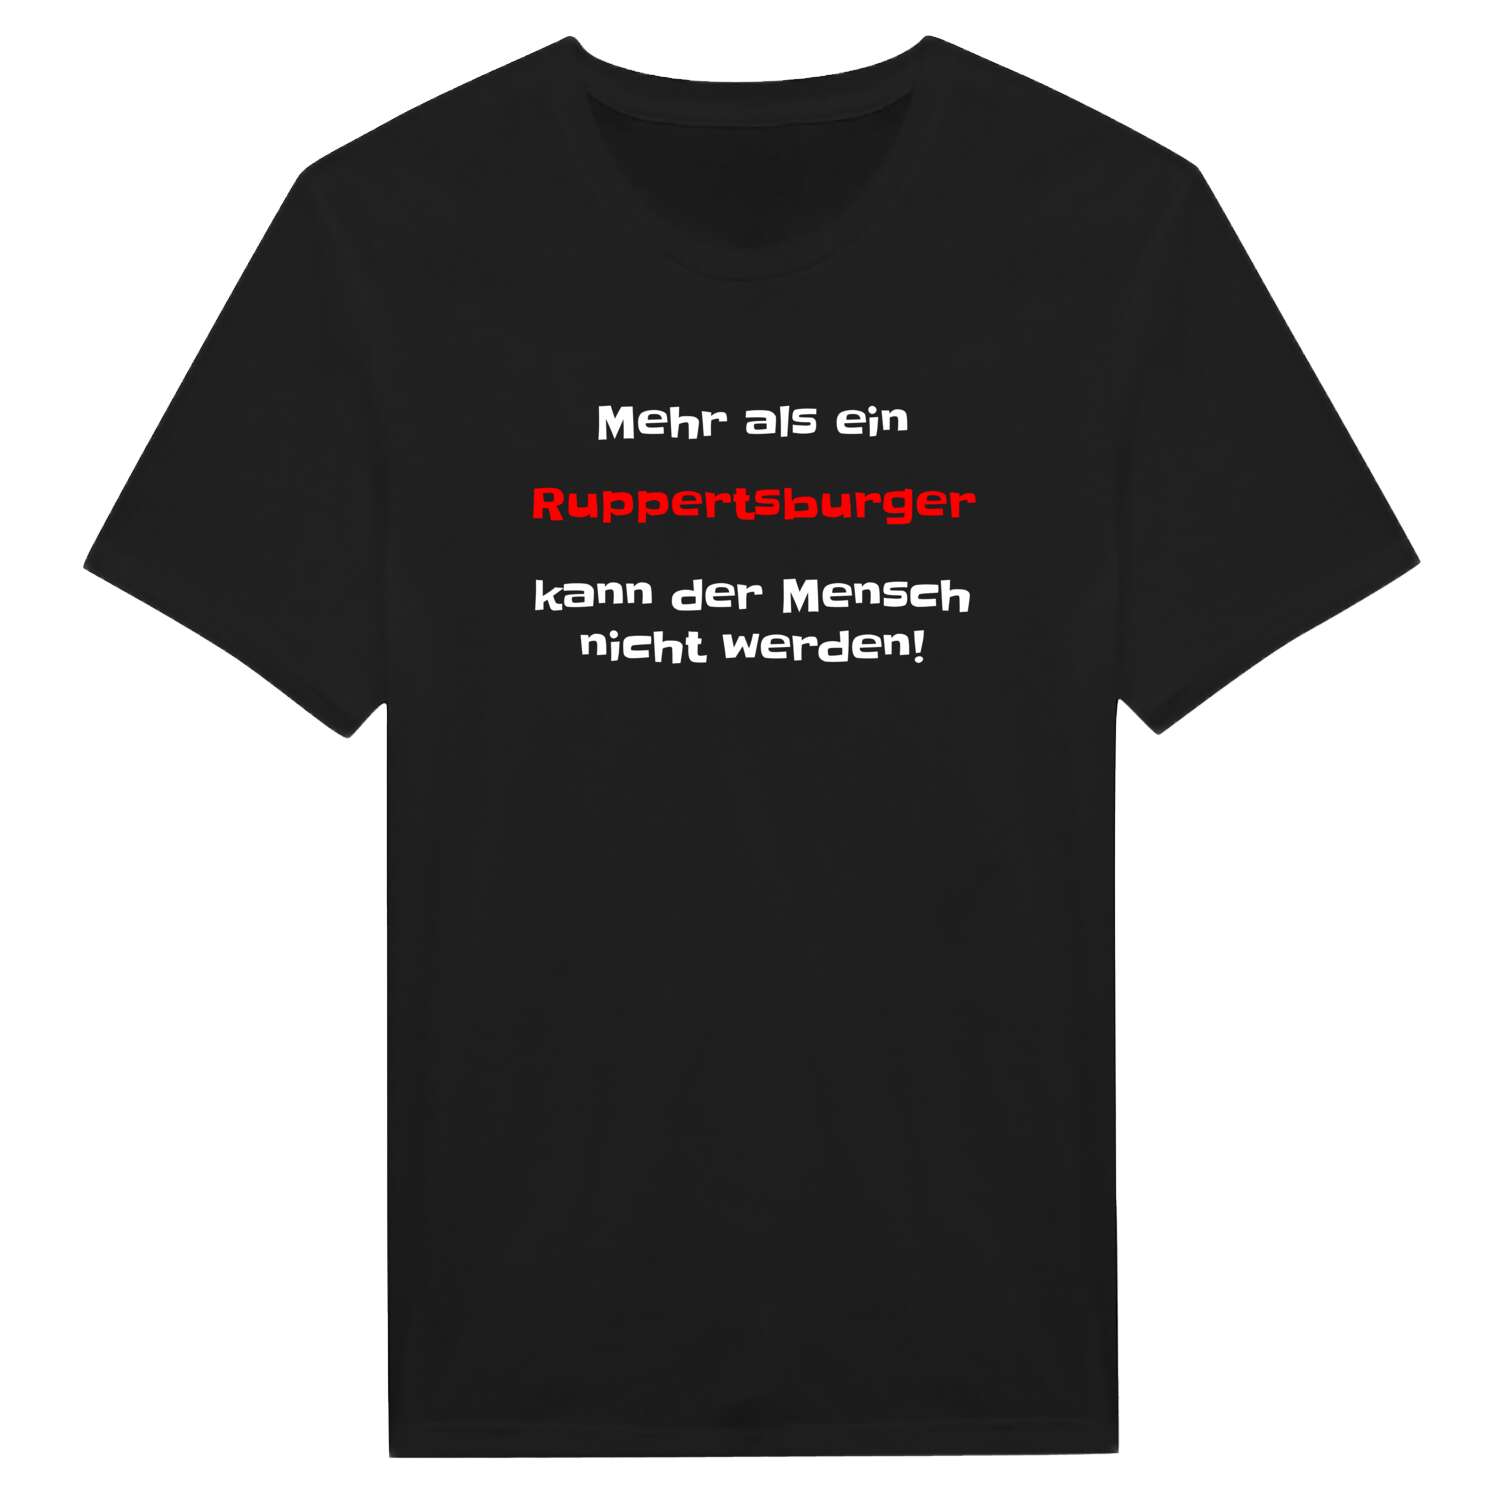 Ruppertsburg T-Shirt »Mehr als ein«